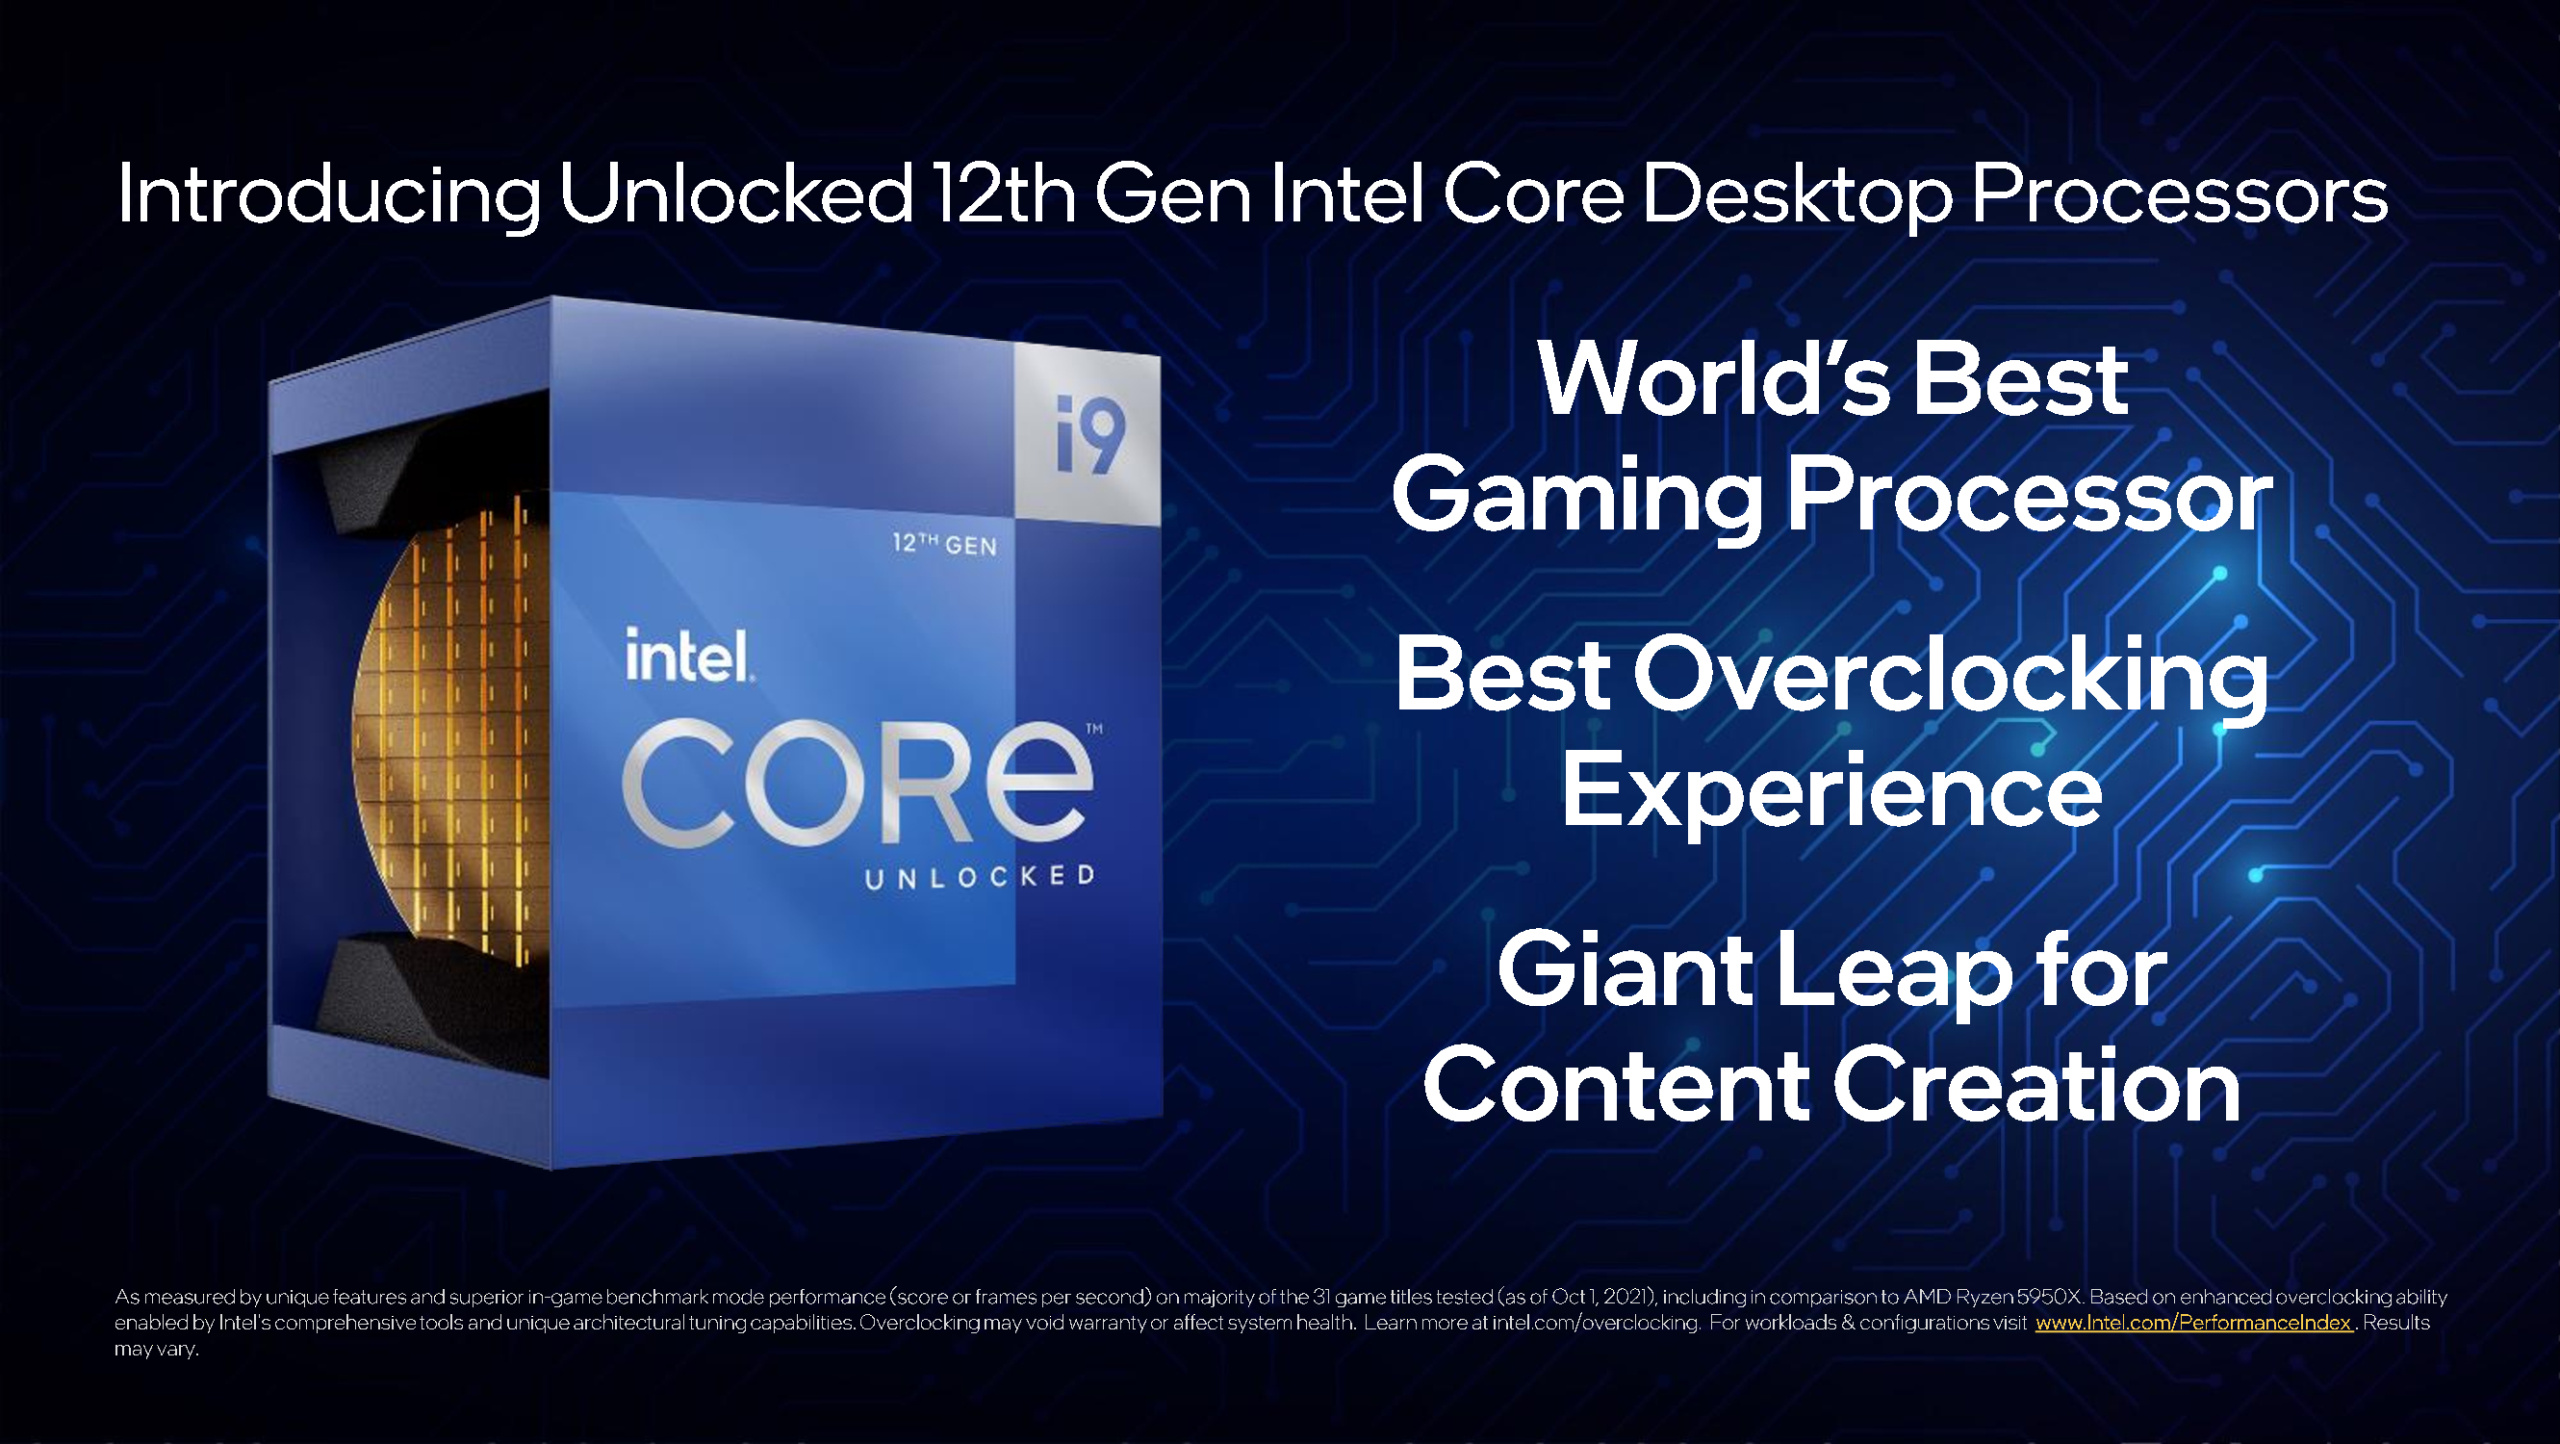 Intel официально анонсировала процессоры Core 12-го поколения (Alder Lake-S) для платформы LGA1700 — техпроцесс Intel 7, гибридная архитектура, поддержка DDR5 и PCIe 5.0